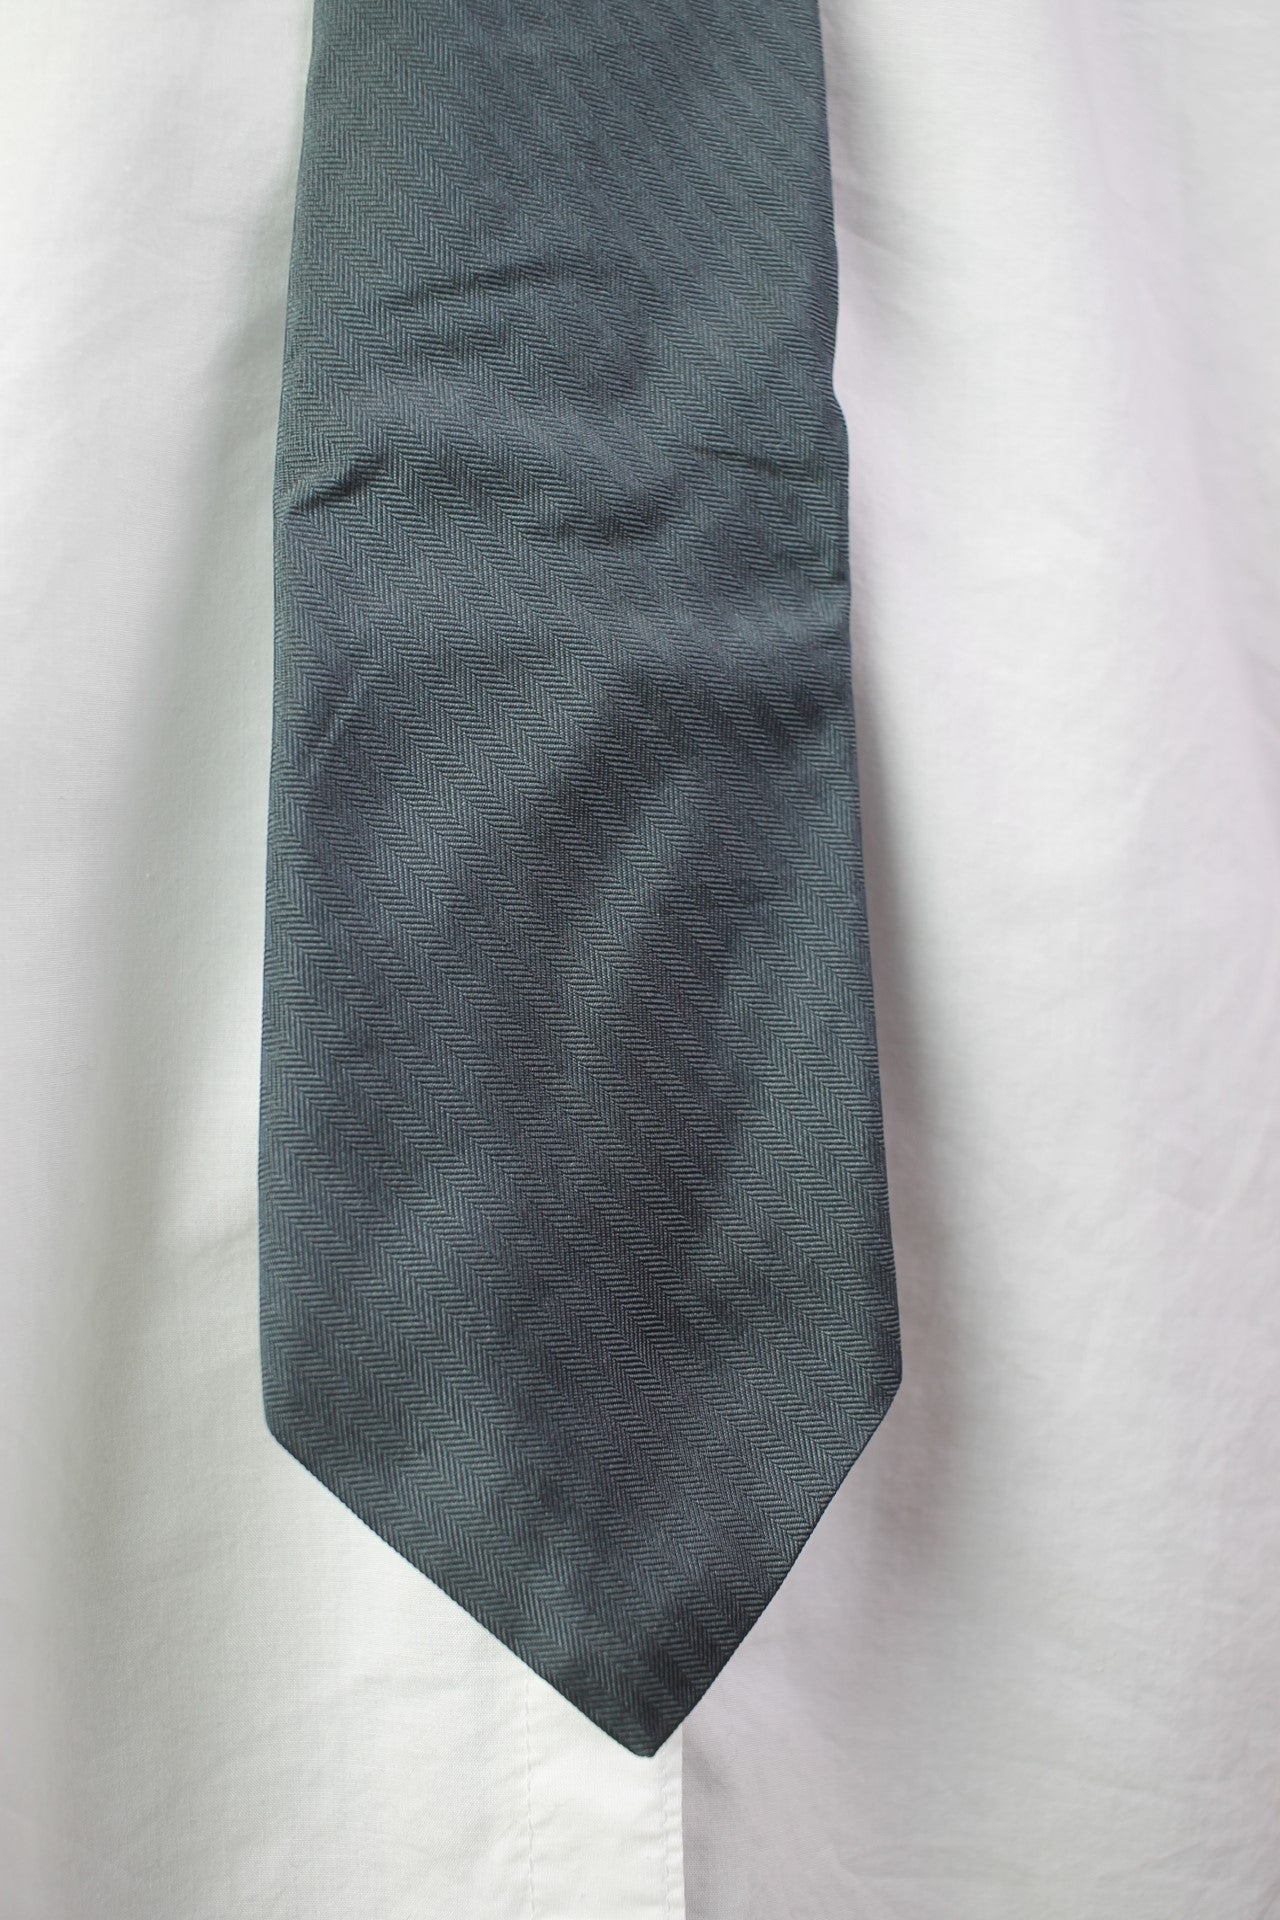 Vintage Calvin Klein 100% silk dark blue navy tie